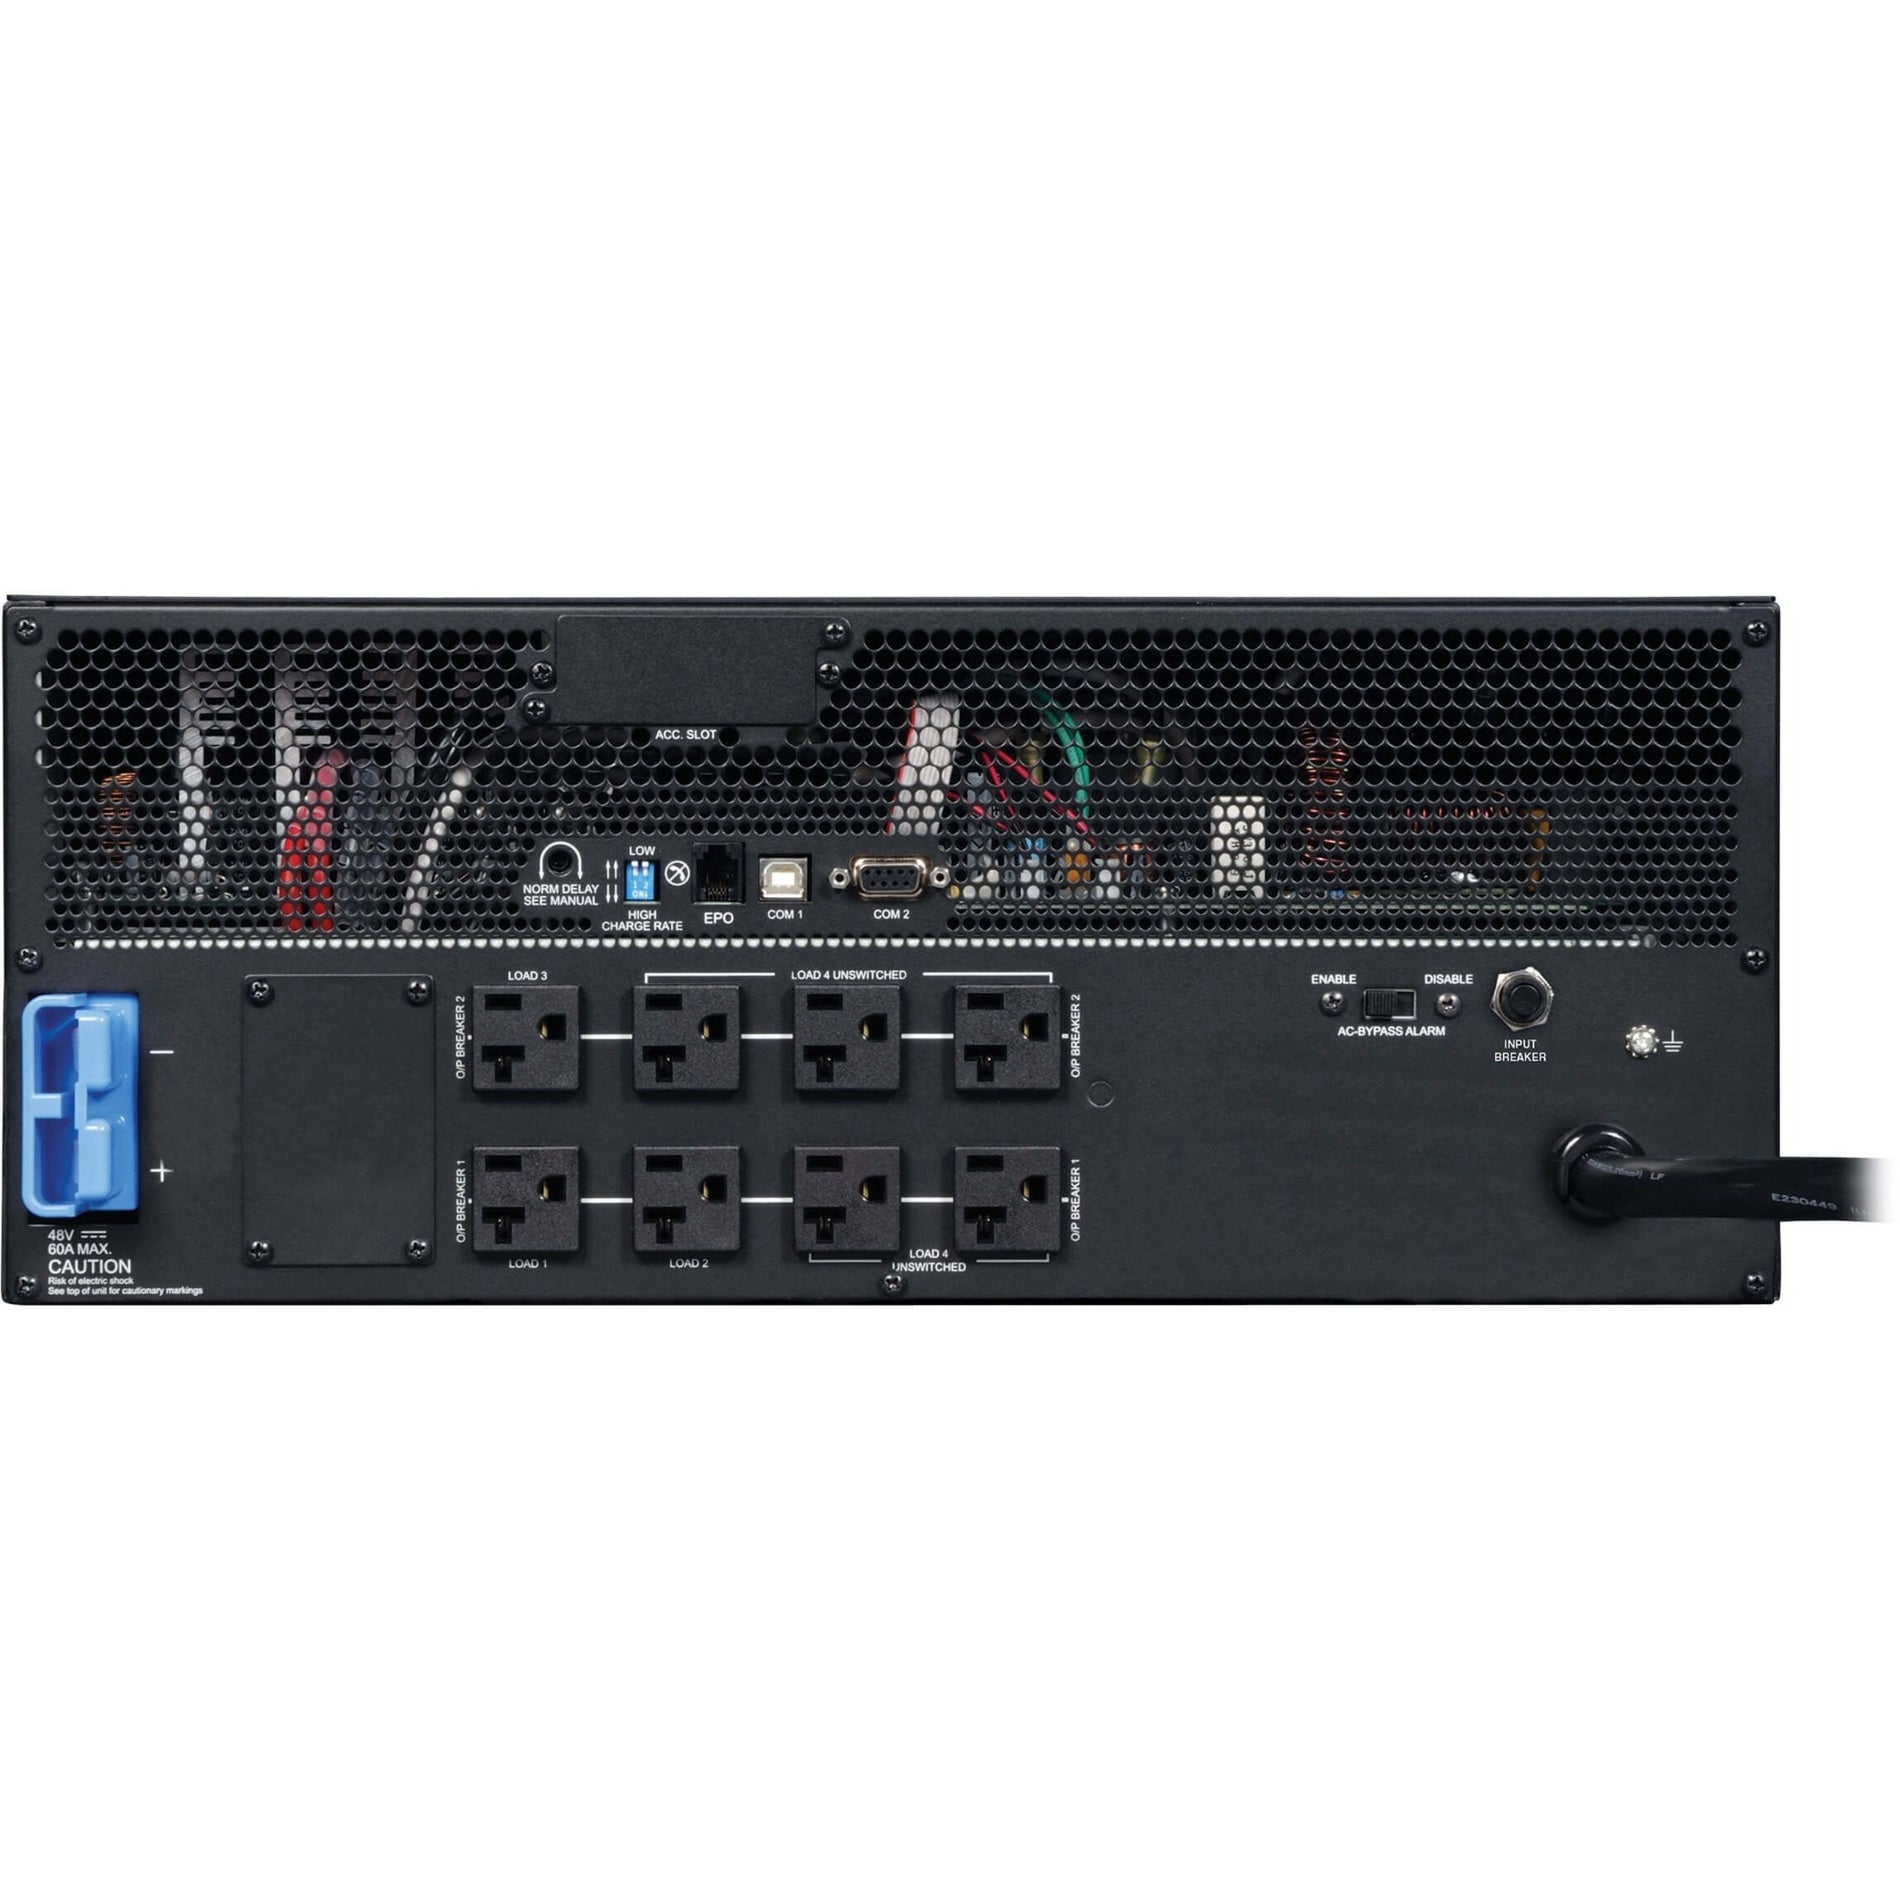 Tripp Lite SMART2200CRMXL SmartPro 2200VA Rack-mountable UPS, 8 Outlets, 120V [Discontinued]